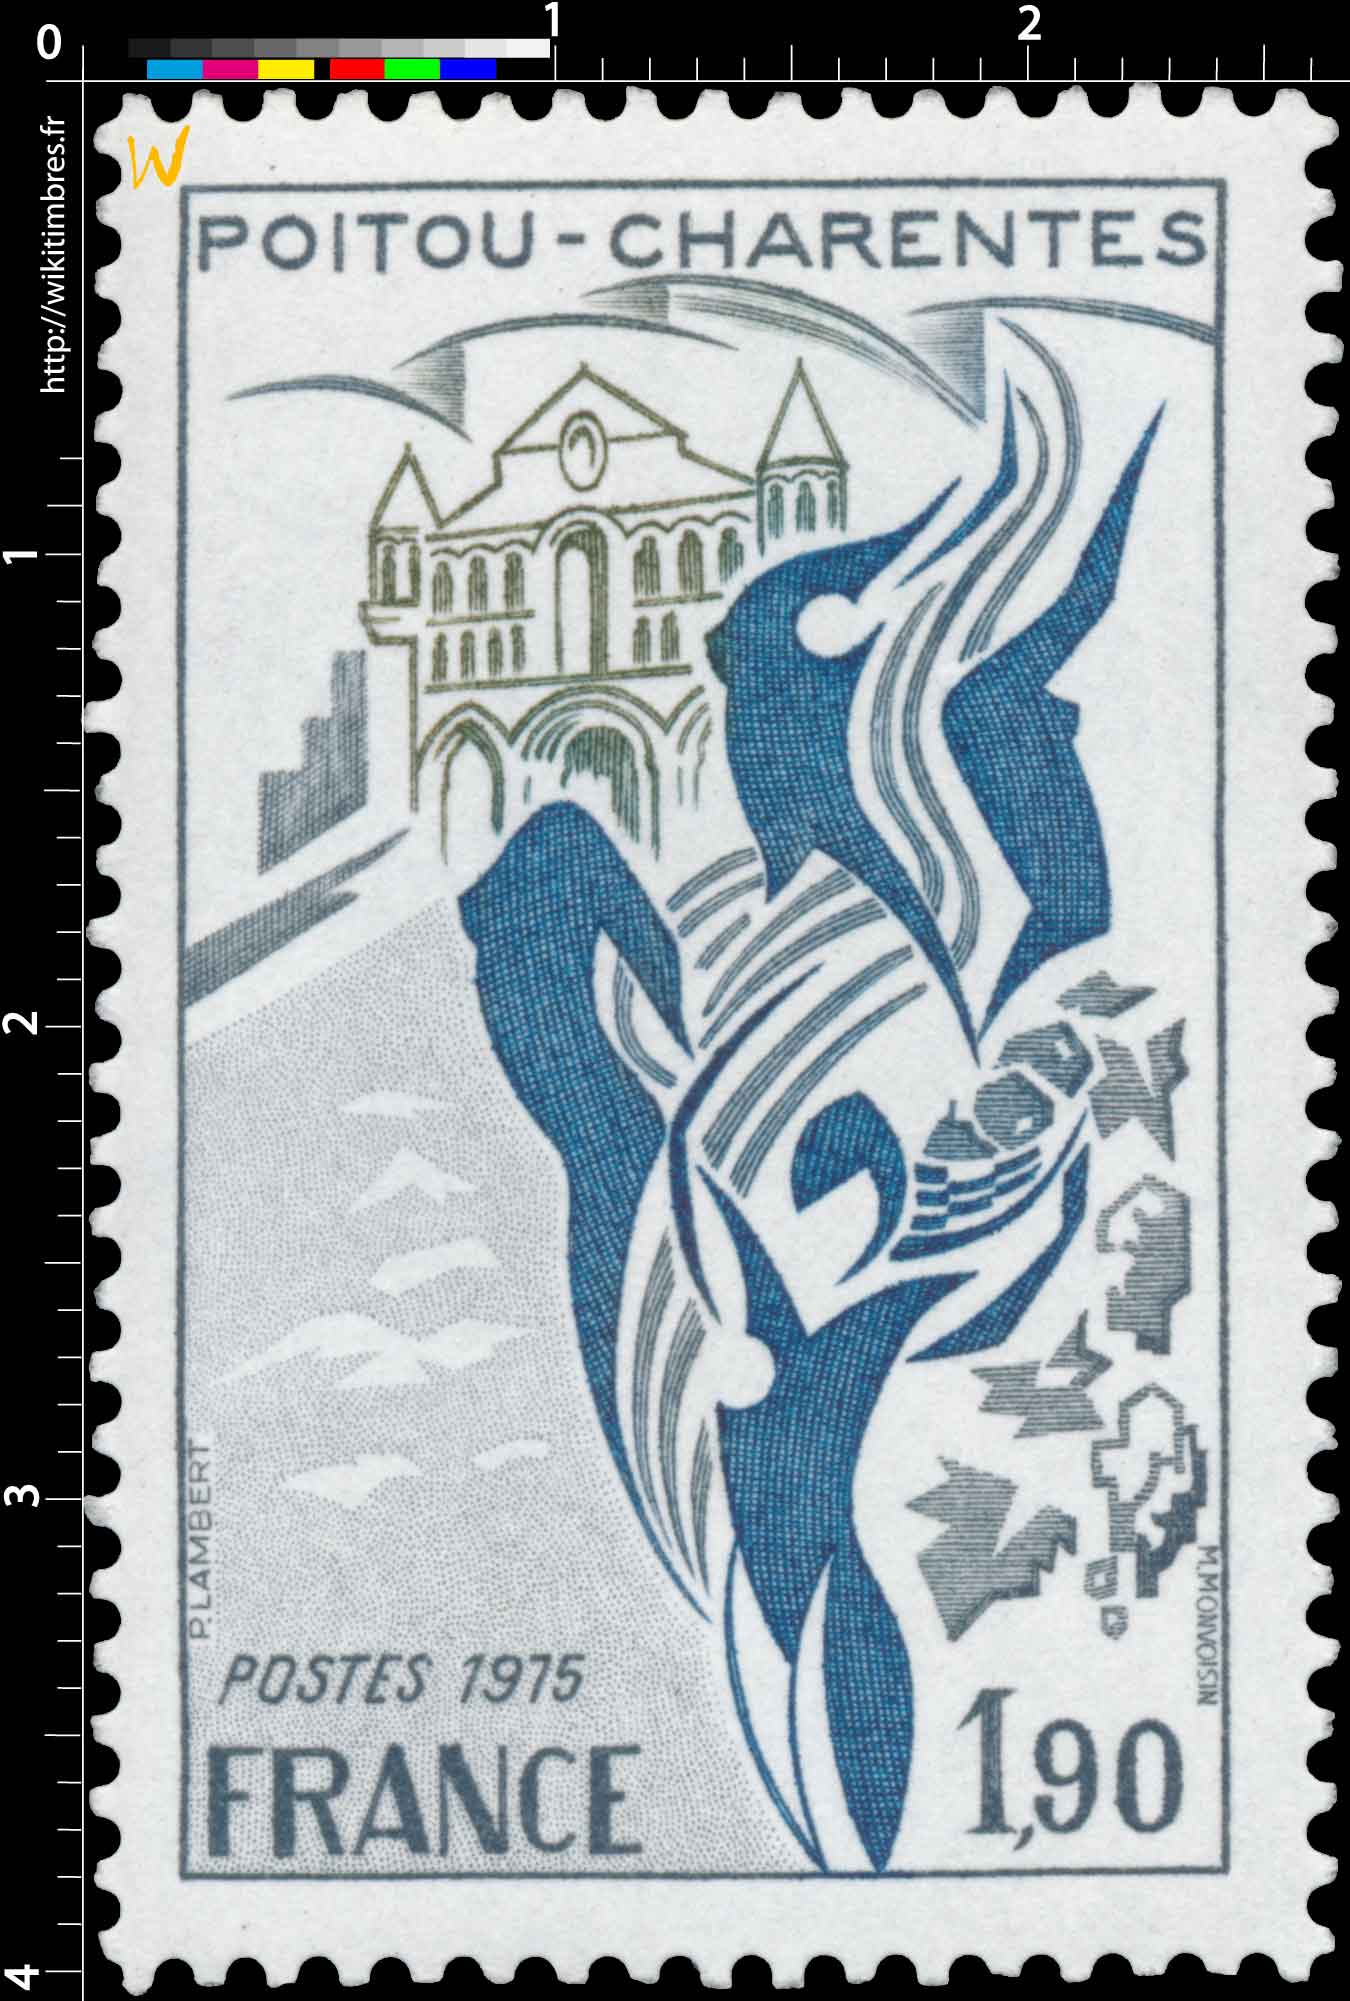 1975 POITOU-CHARENTES